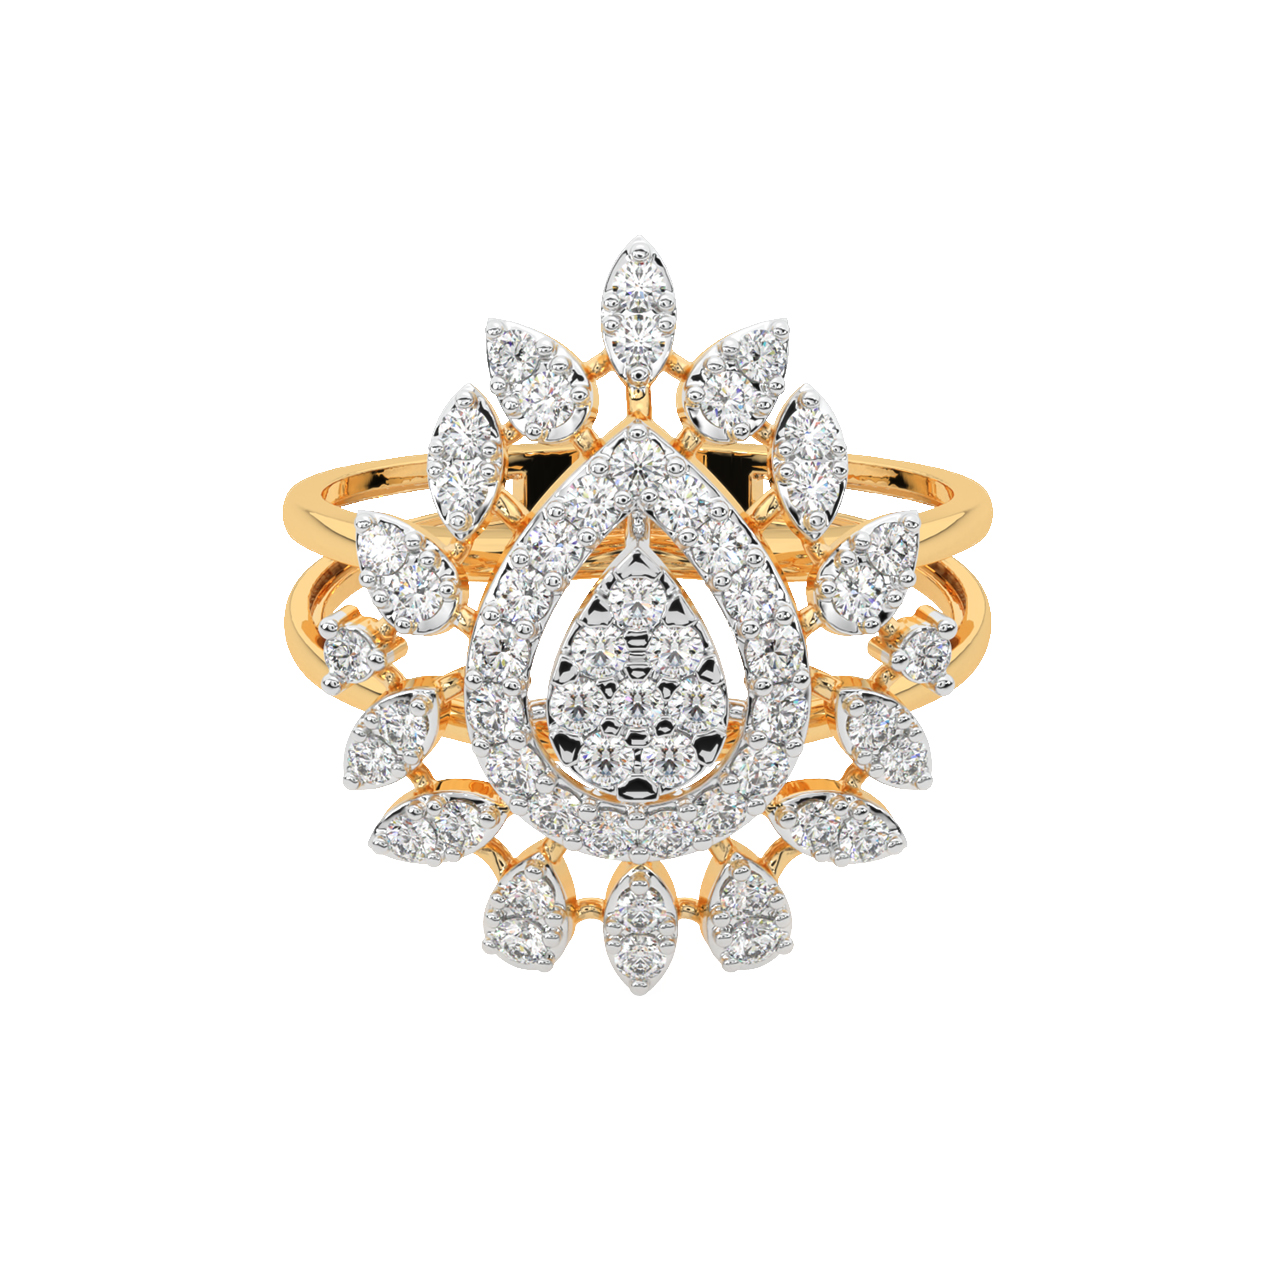 Leia Round Diamond Engagement Ring